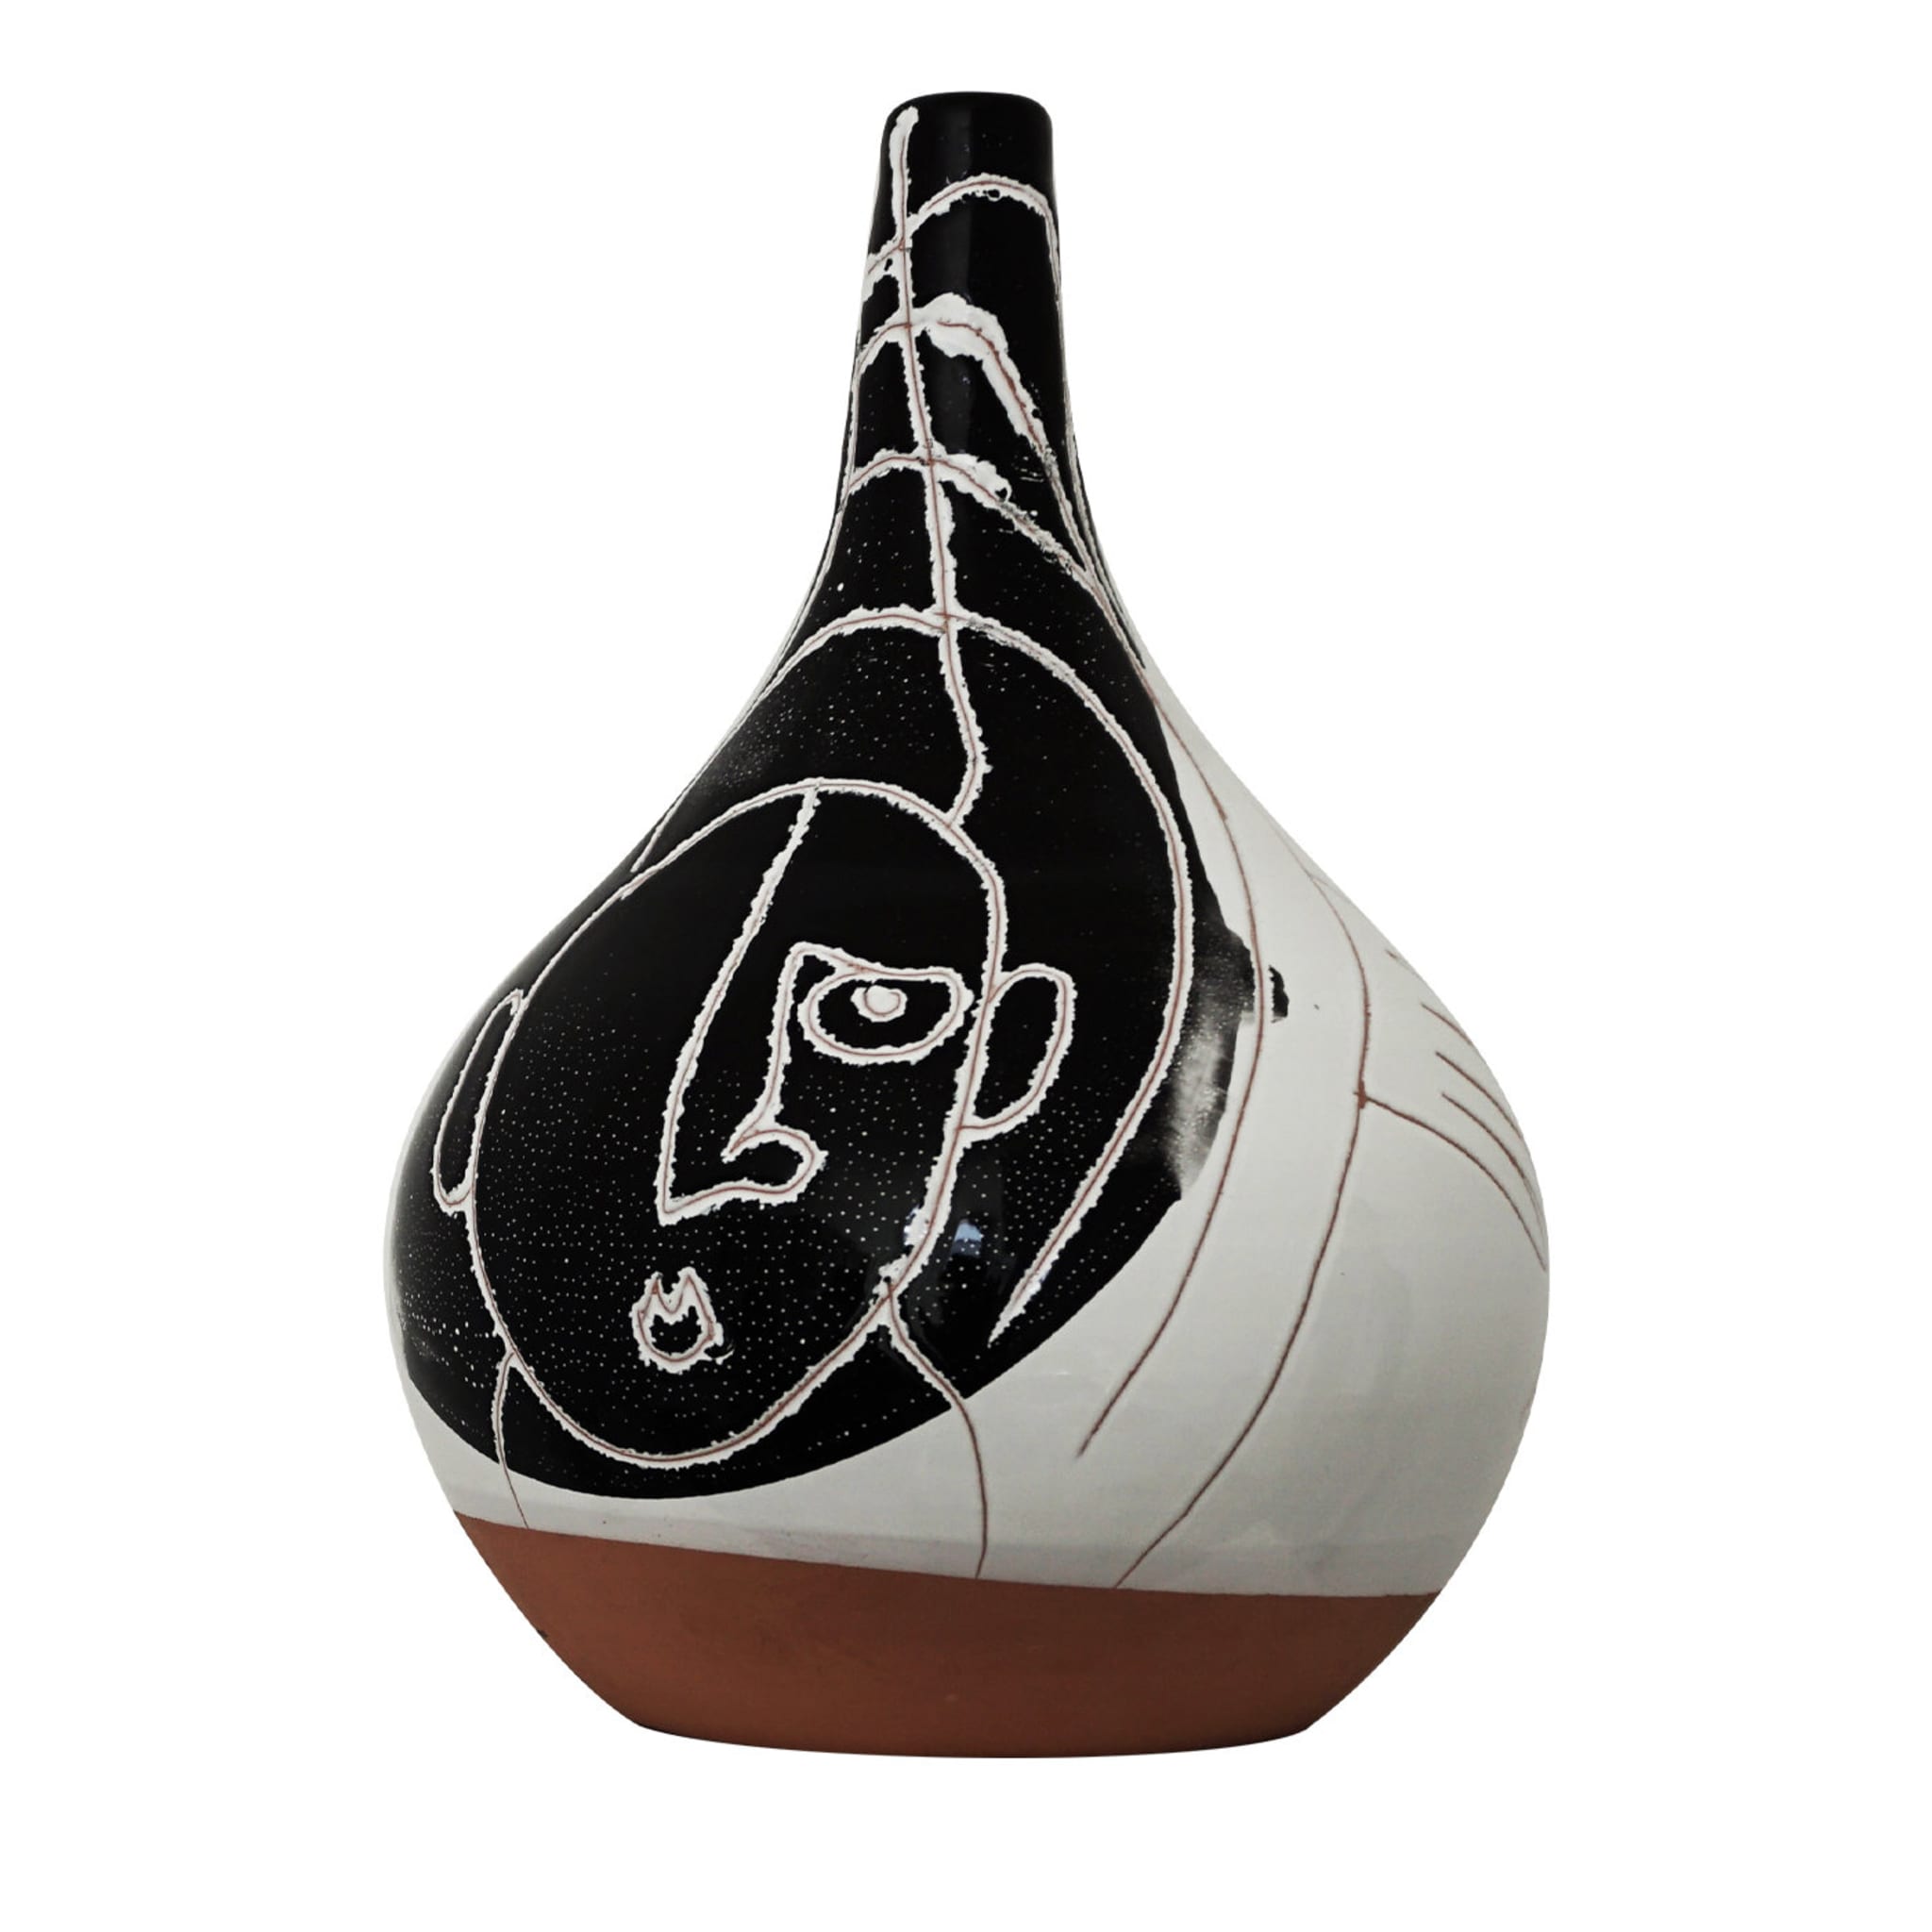 Ceramiche Elettive VIII Vase by Vincenzo D'Alba and Antonio Marras - Main view